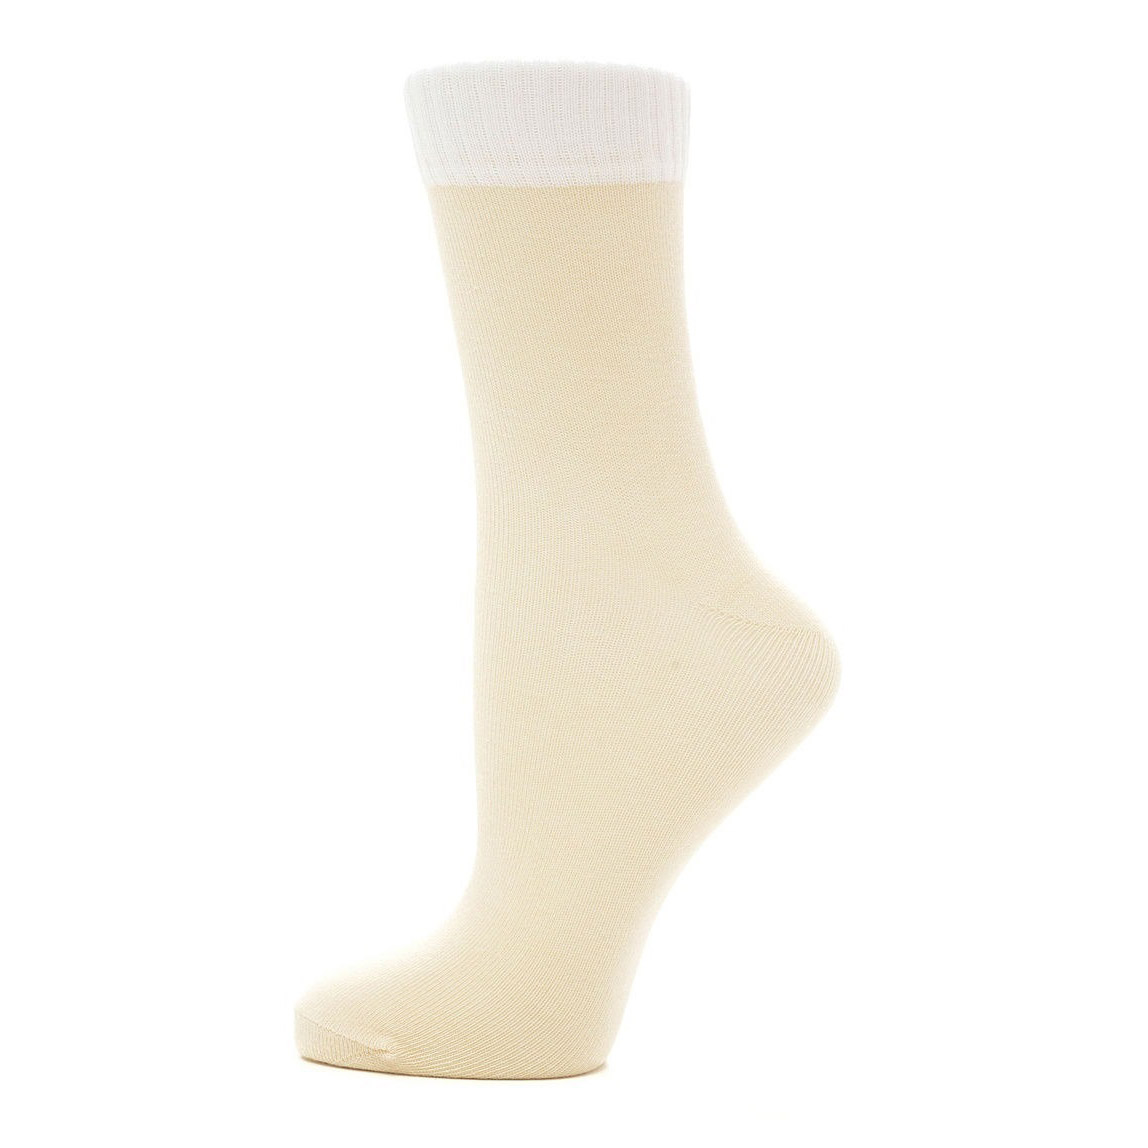 Носки Karmen Calza Look beige S 35-37, цвет бежевый, размер 35-37 - фото 1